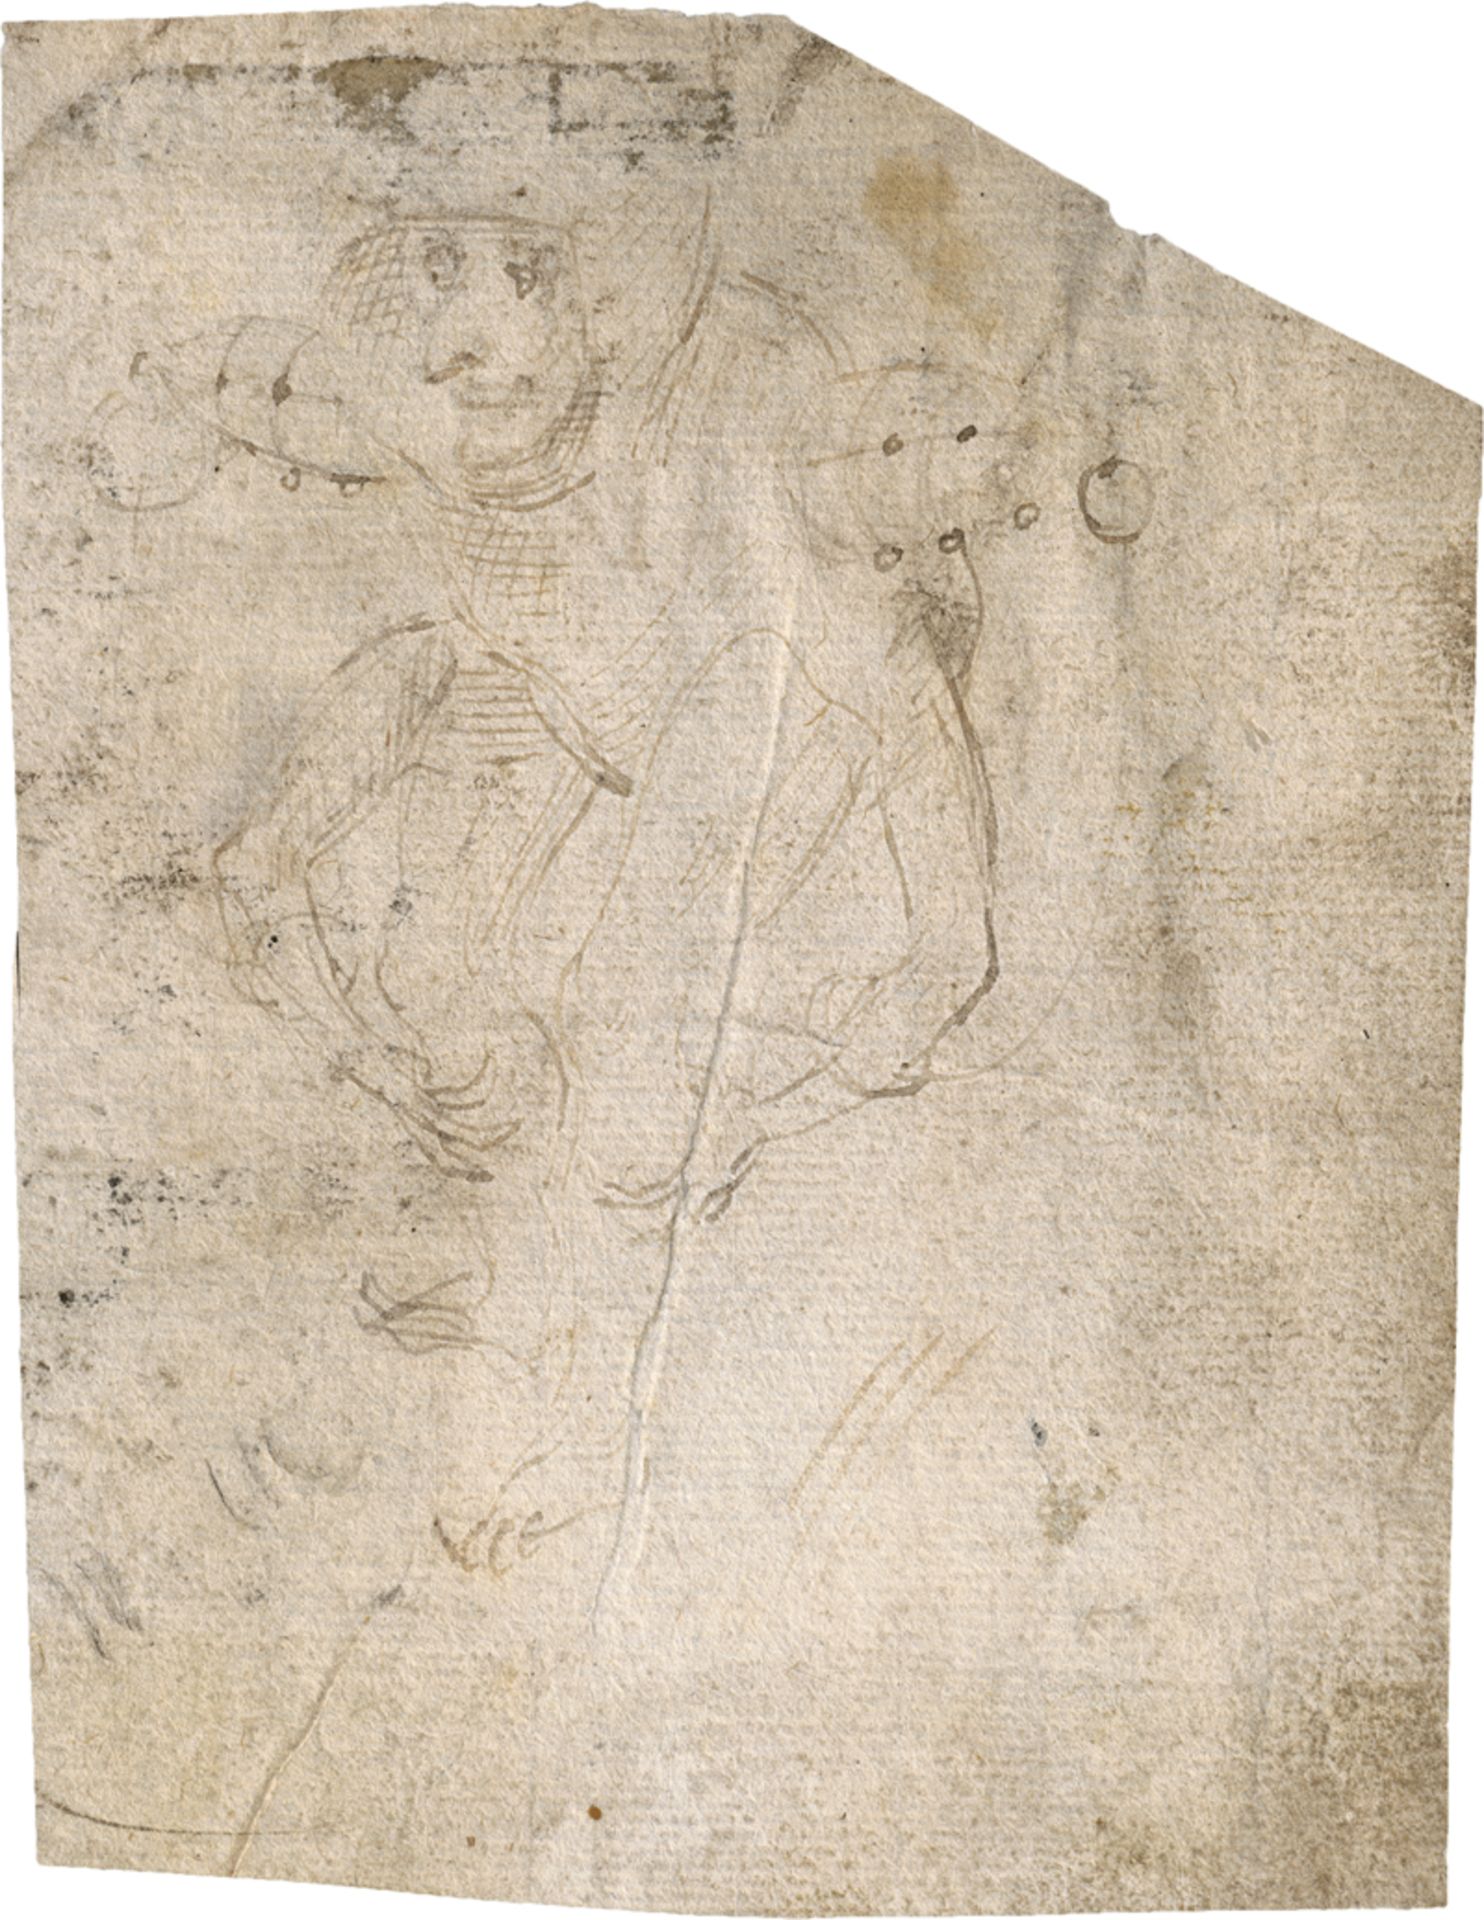 Bosch, Hieronymus: Figurenskizze eines kleinen Dämons